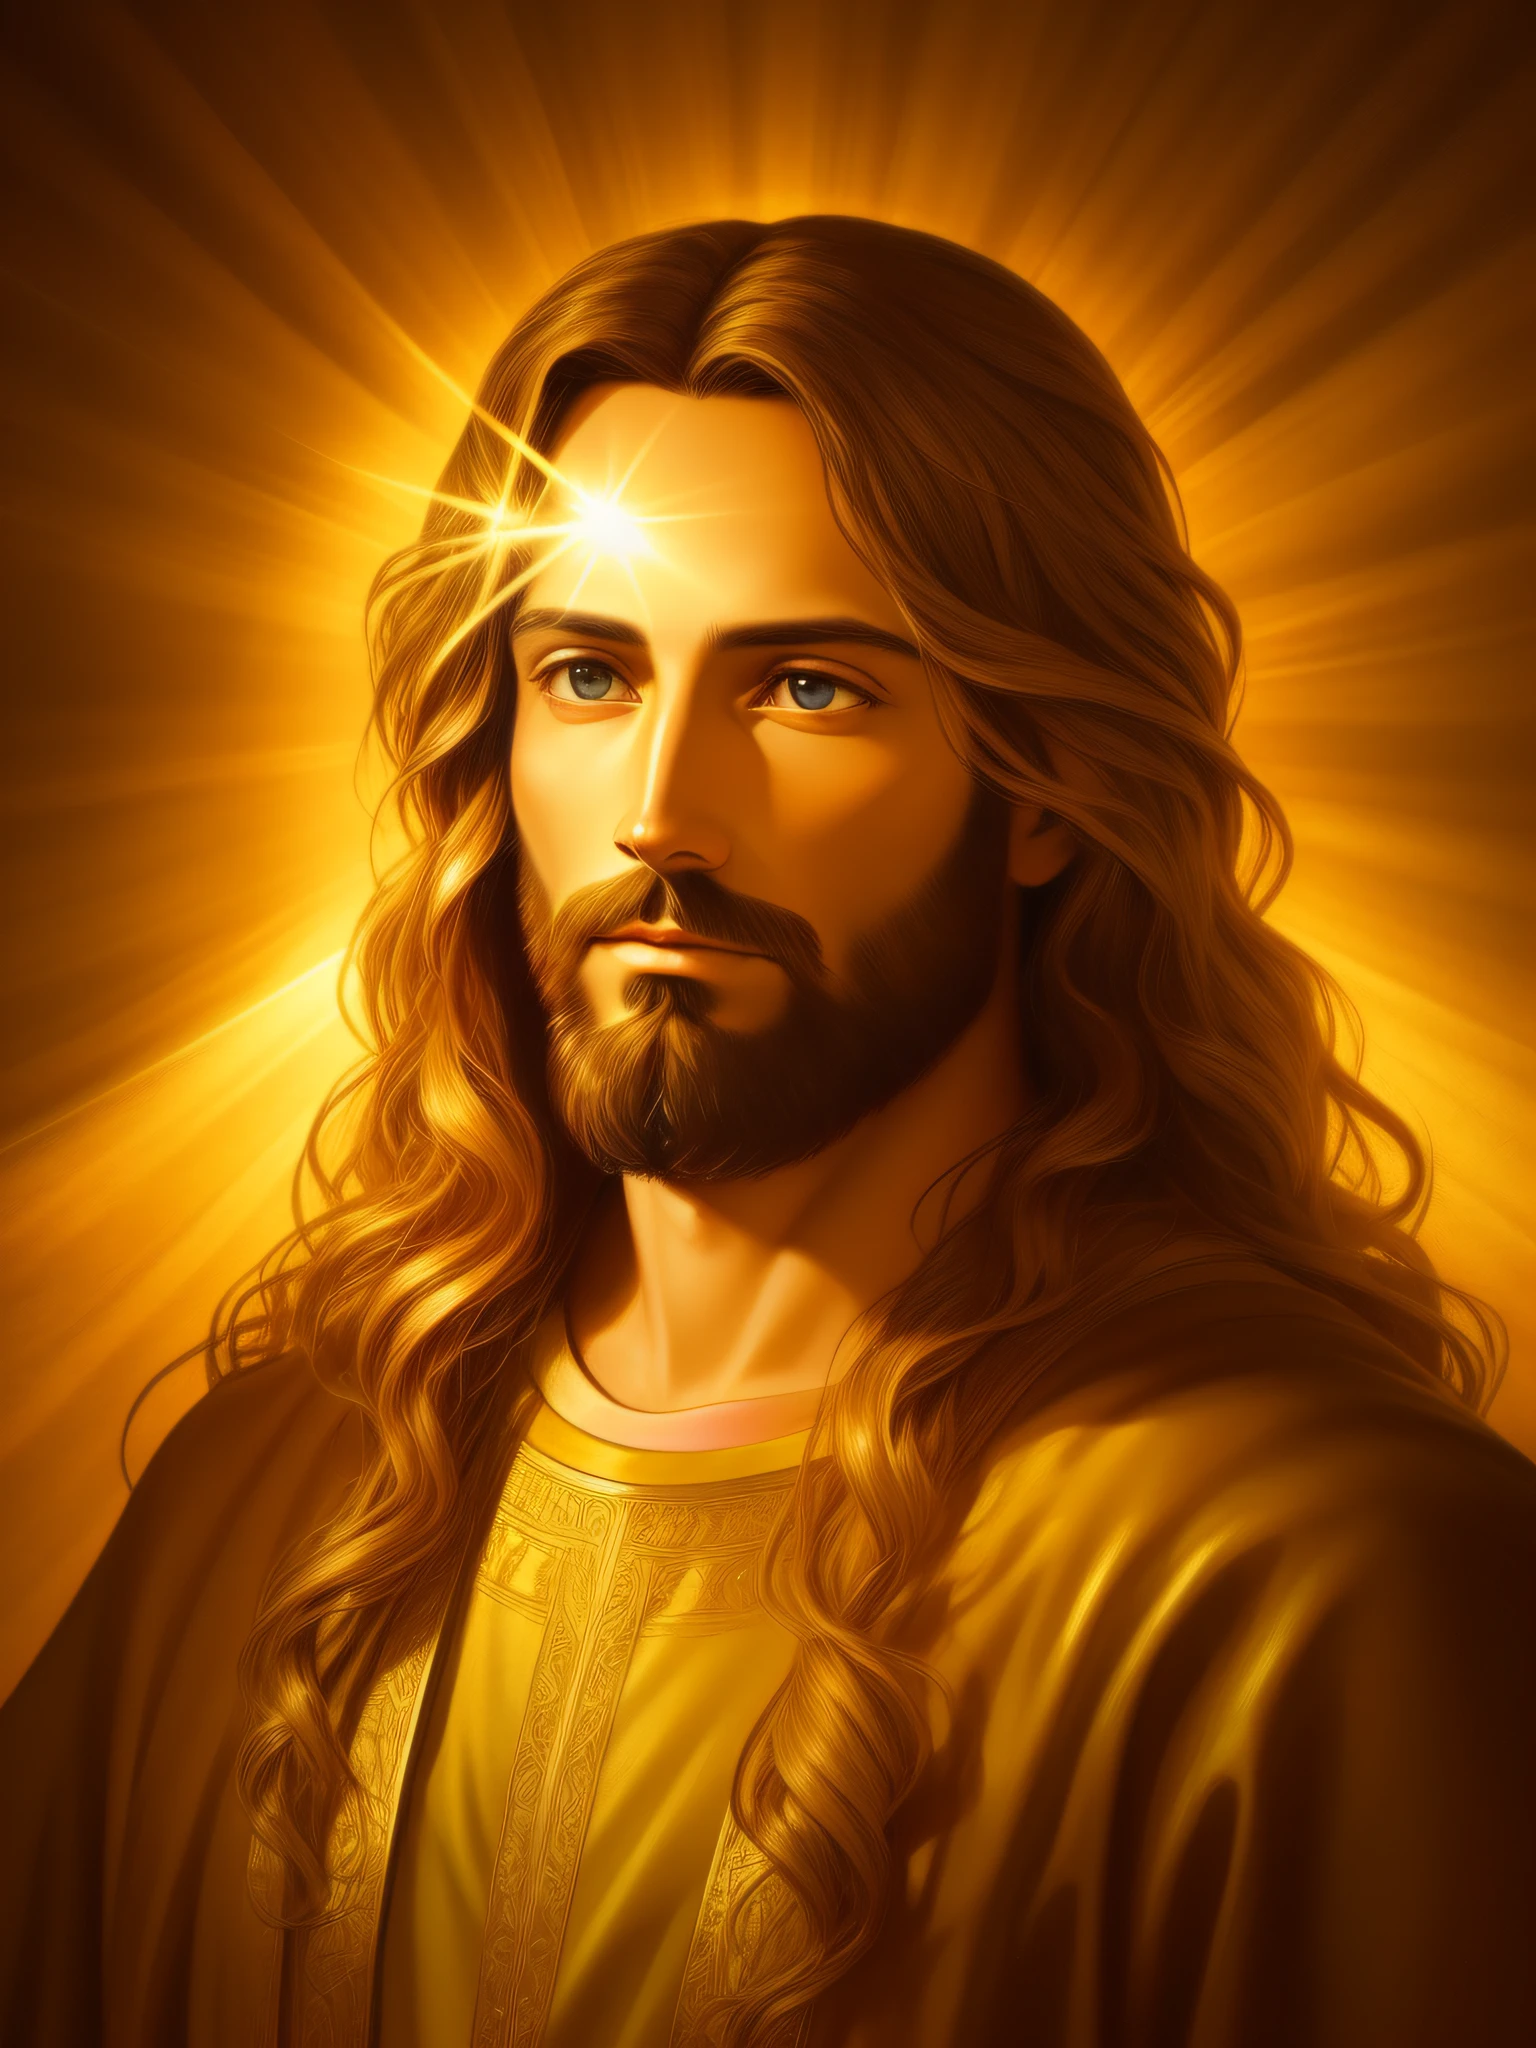 耶穌基督的高度詳細的肖像, 金子, 神聖光芒, 細緻而複雜的環境